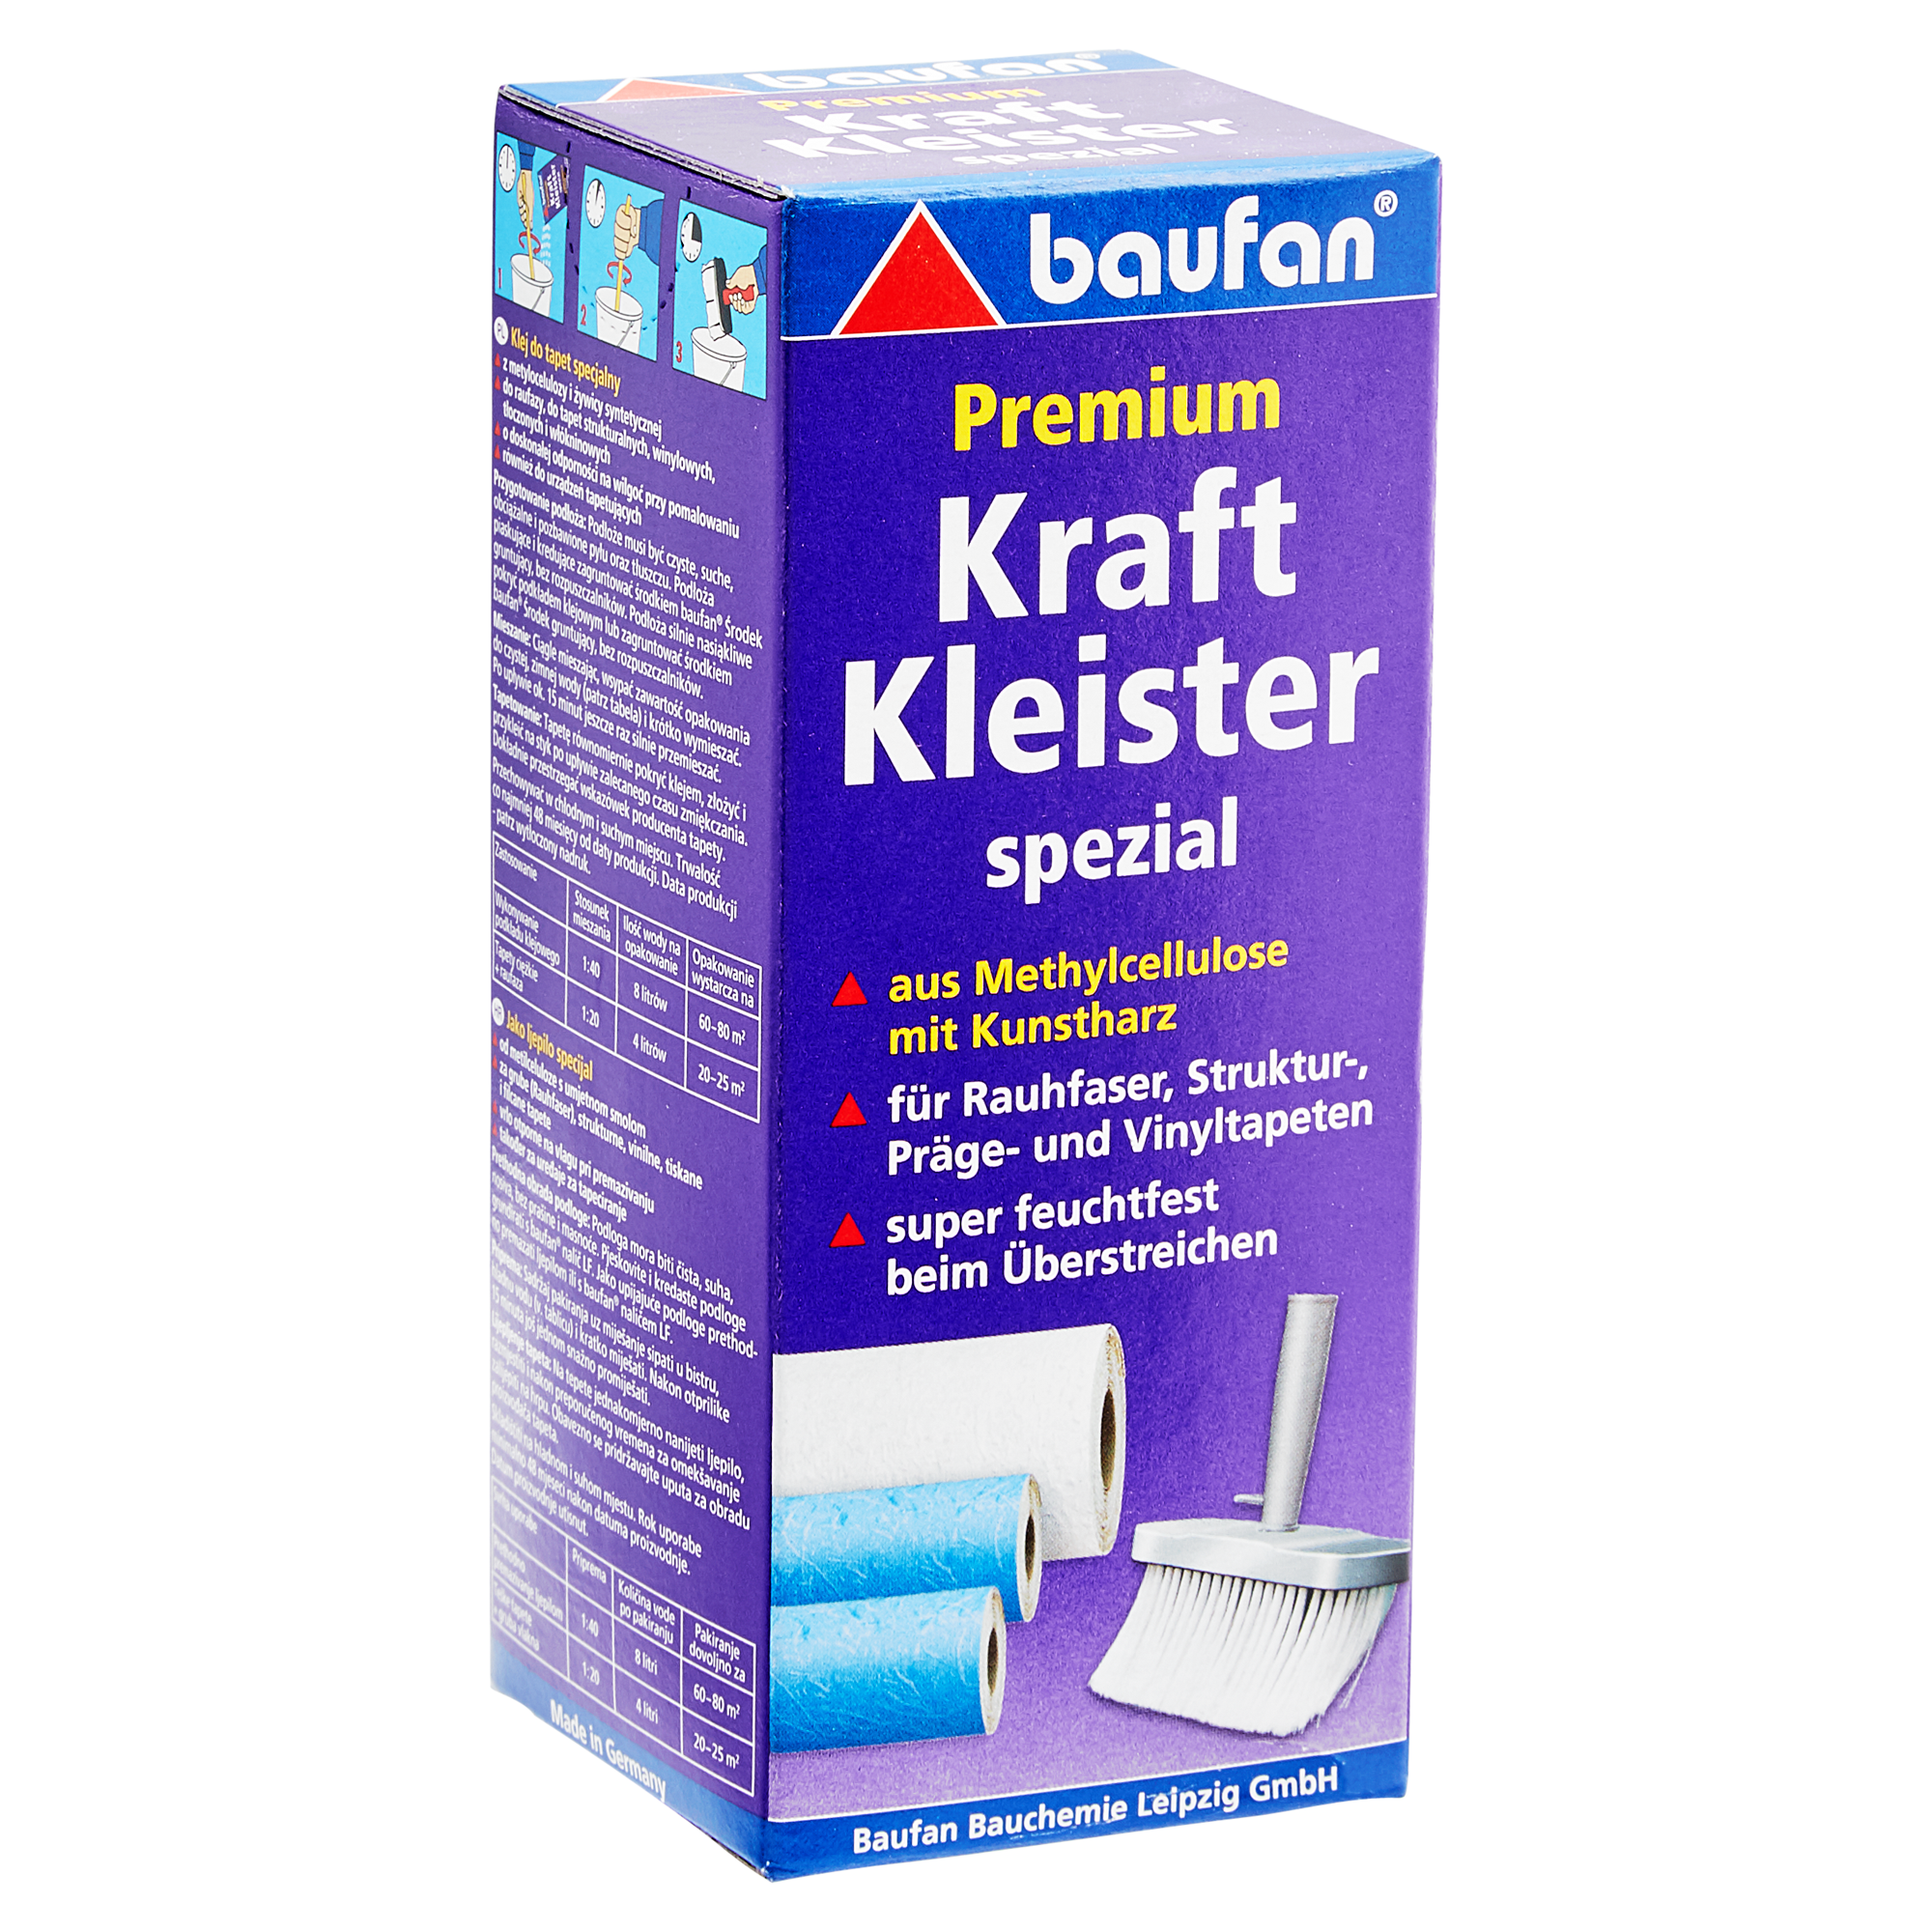 Premium-Kraftkleister "Spezial" 200 g + product picture